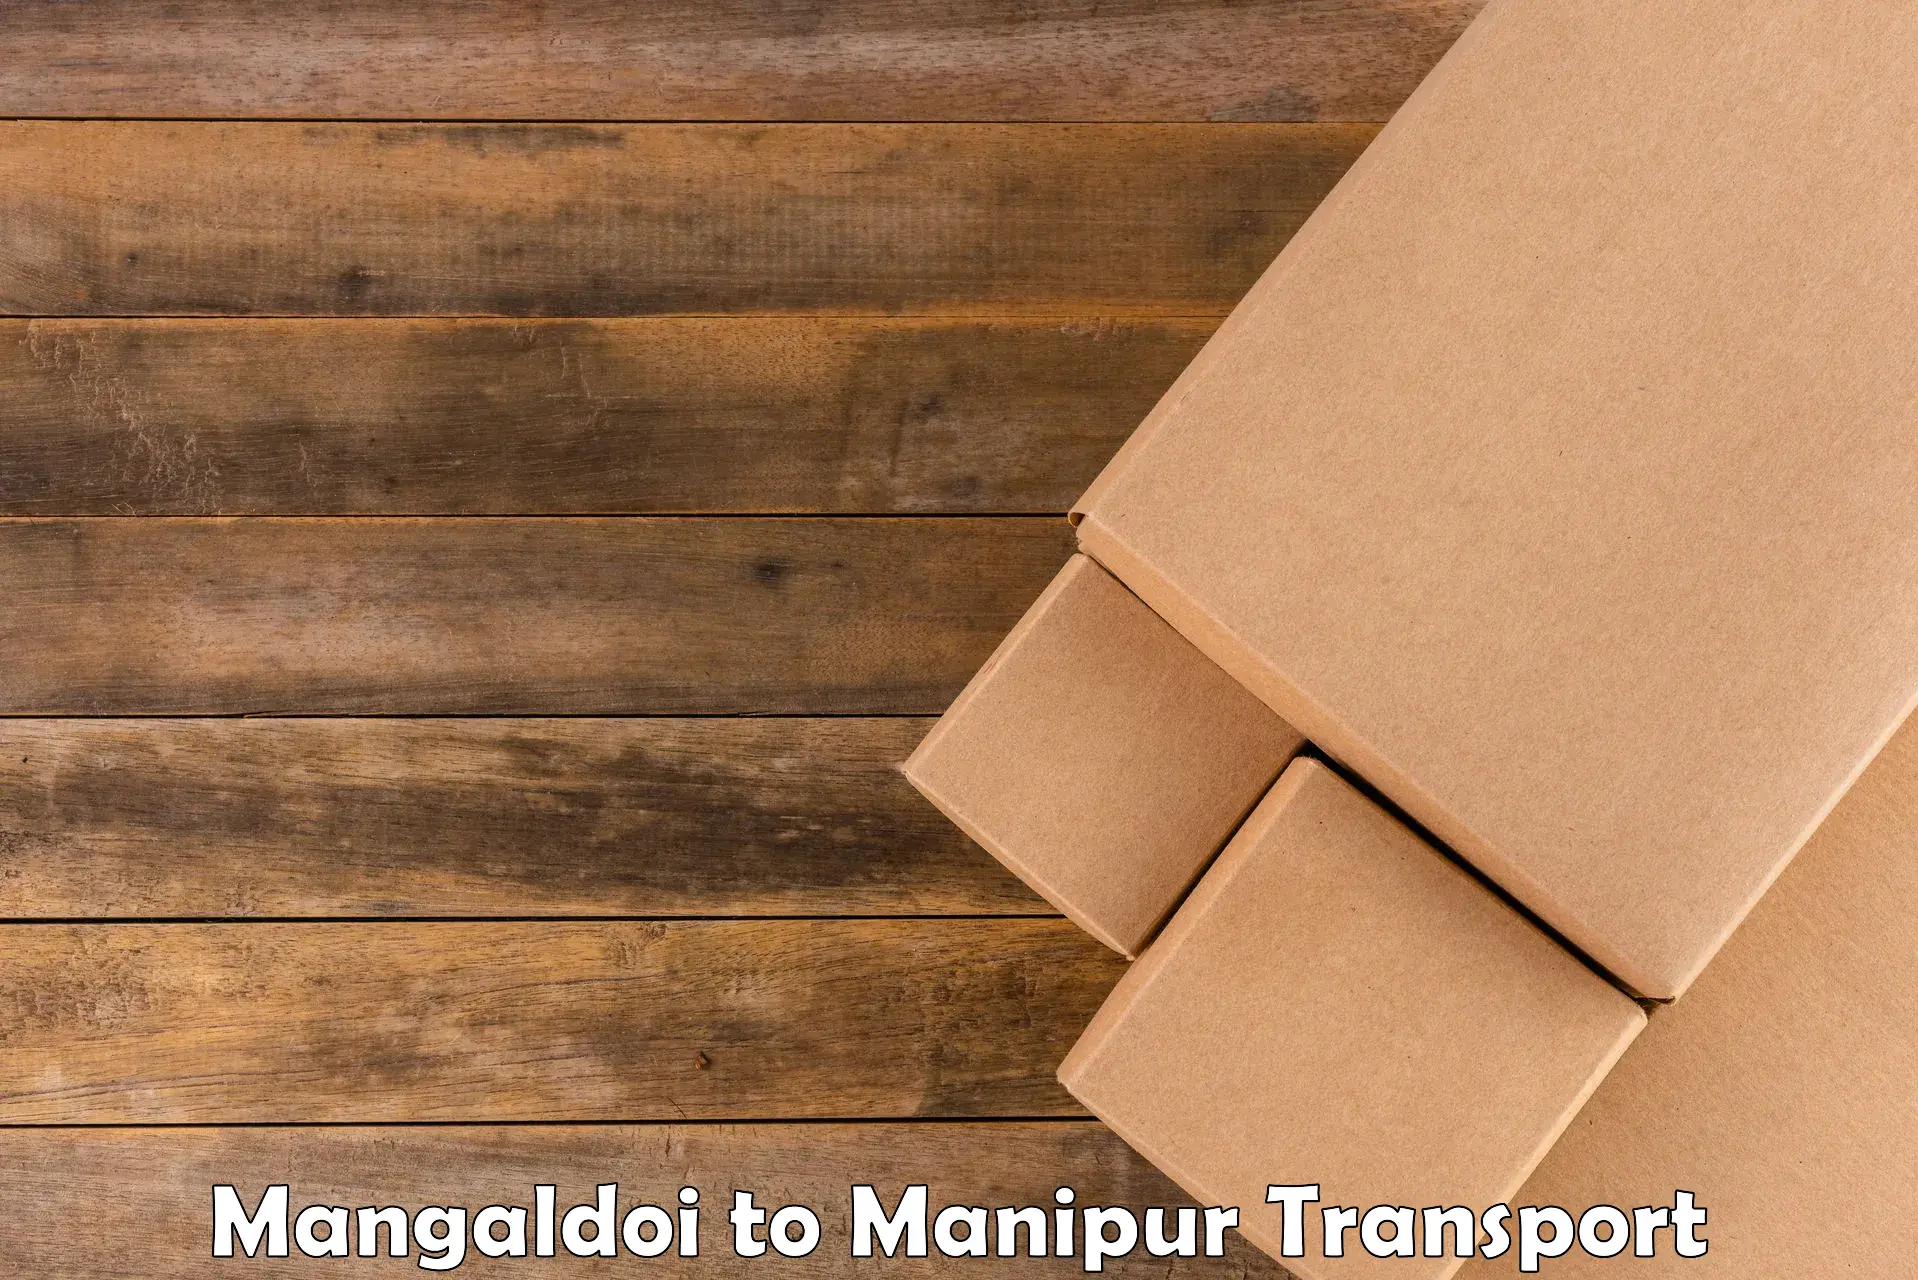 Lorry transport service Mangaldoi to Ukhrul